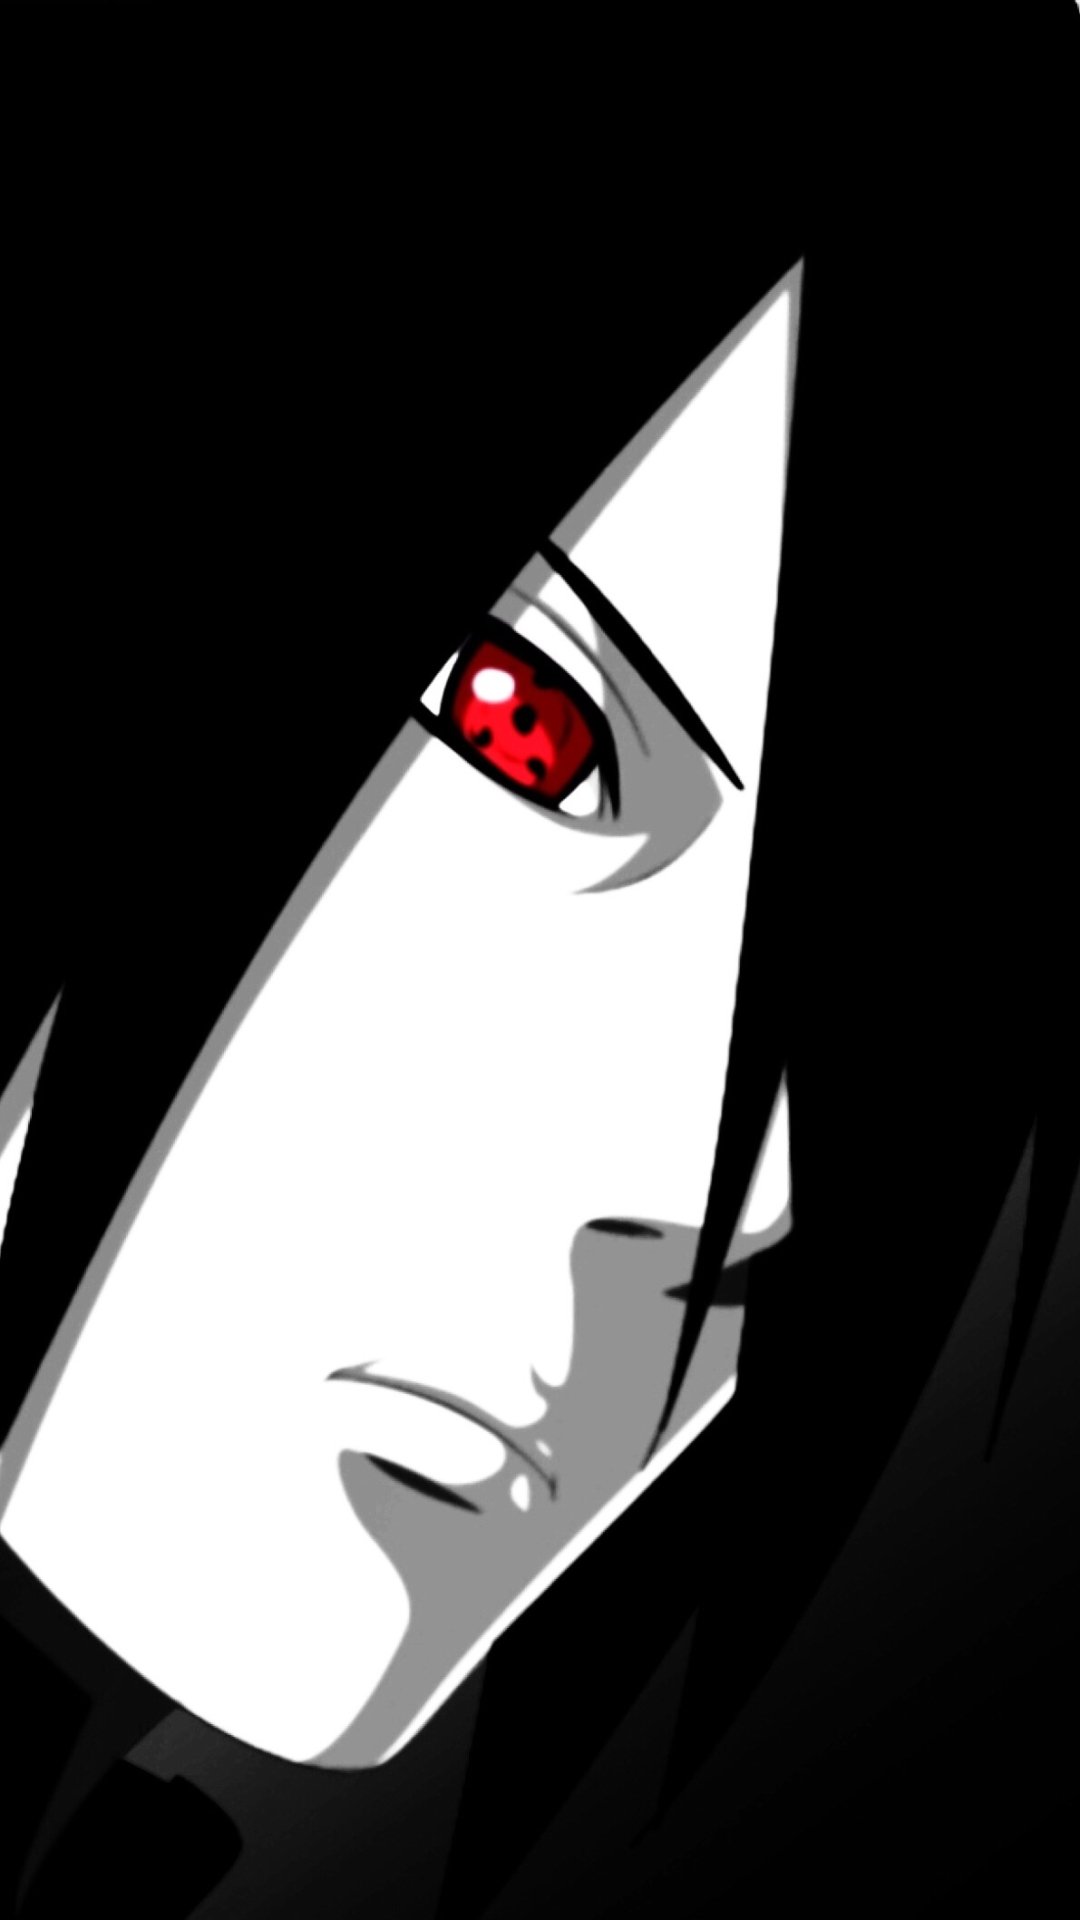 Anime Naruto 1080x1920 Wallpaper Id 822811 Mobile Abyss - sasuke sharingan decal roblox